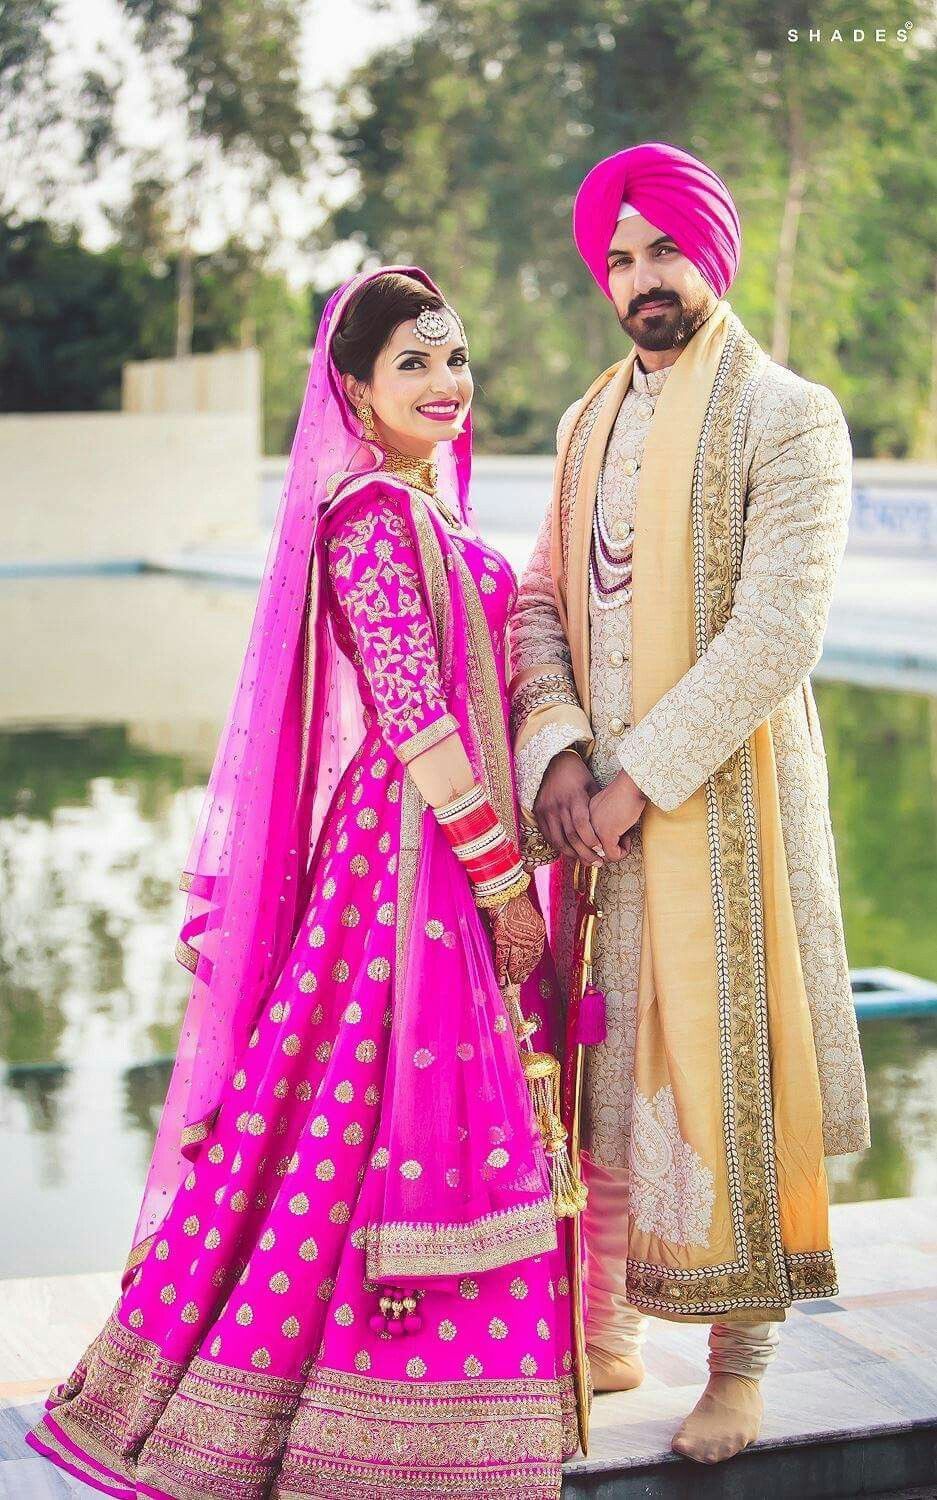 Punjabi couples ideas. punjabi couple, punjabi wedding couple, couples